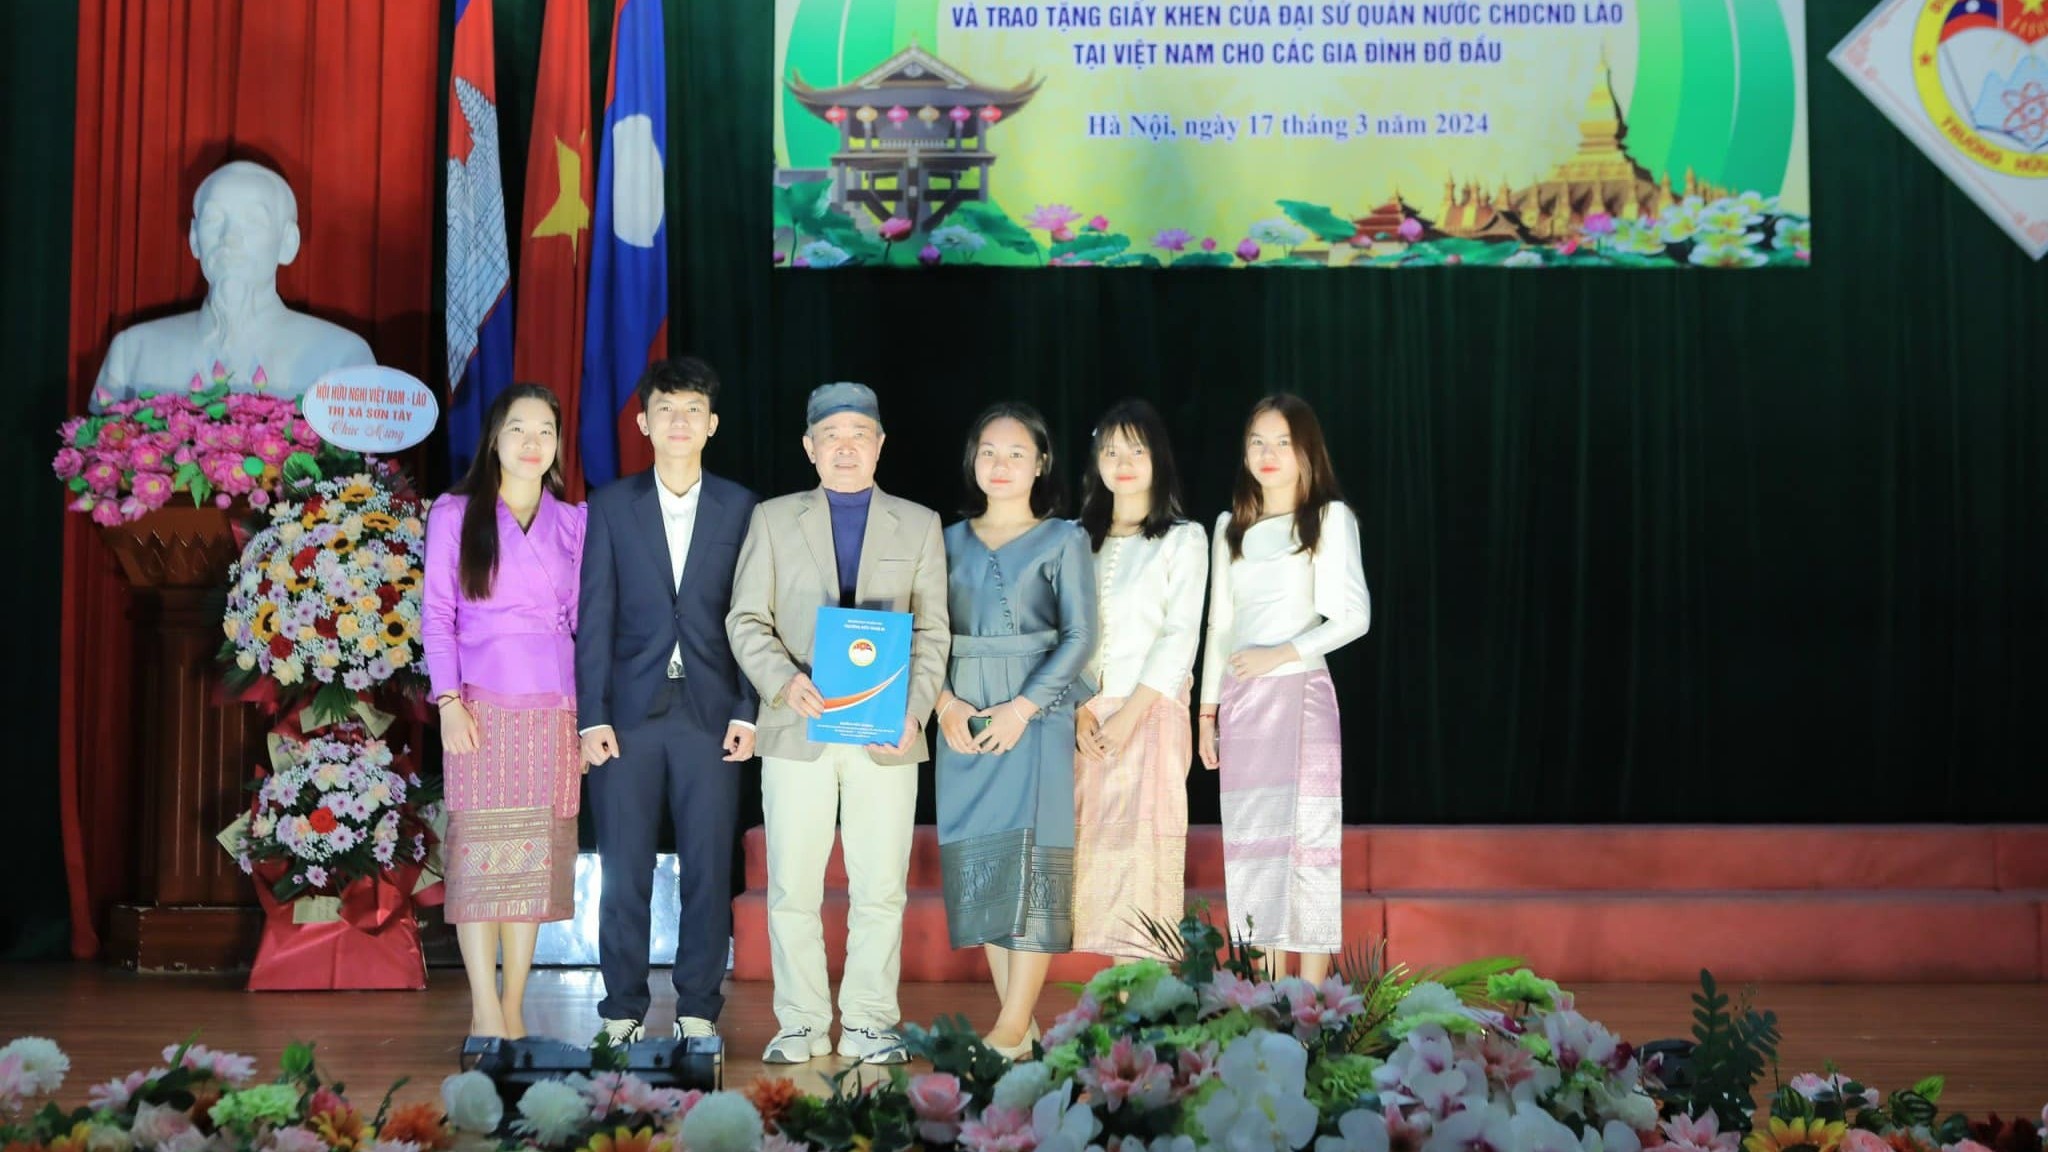 91 lưu học sinh Lào Trường Hữu nghị 80 có thêm gia đình thứ hai ở Việt Nam